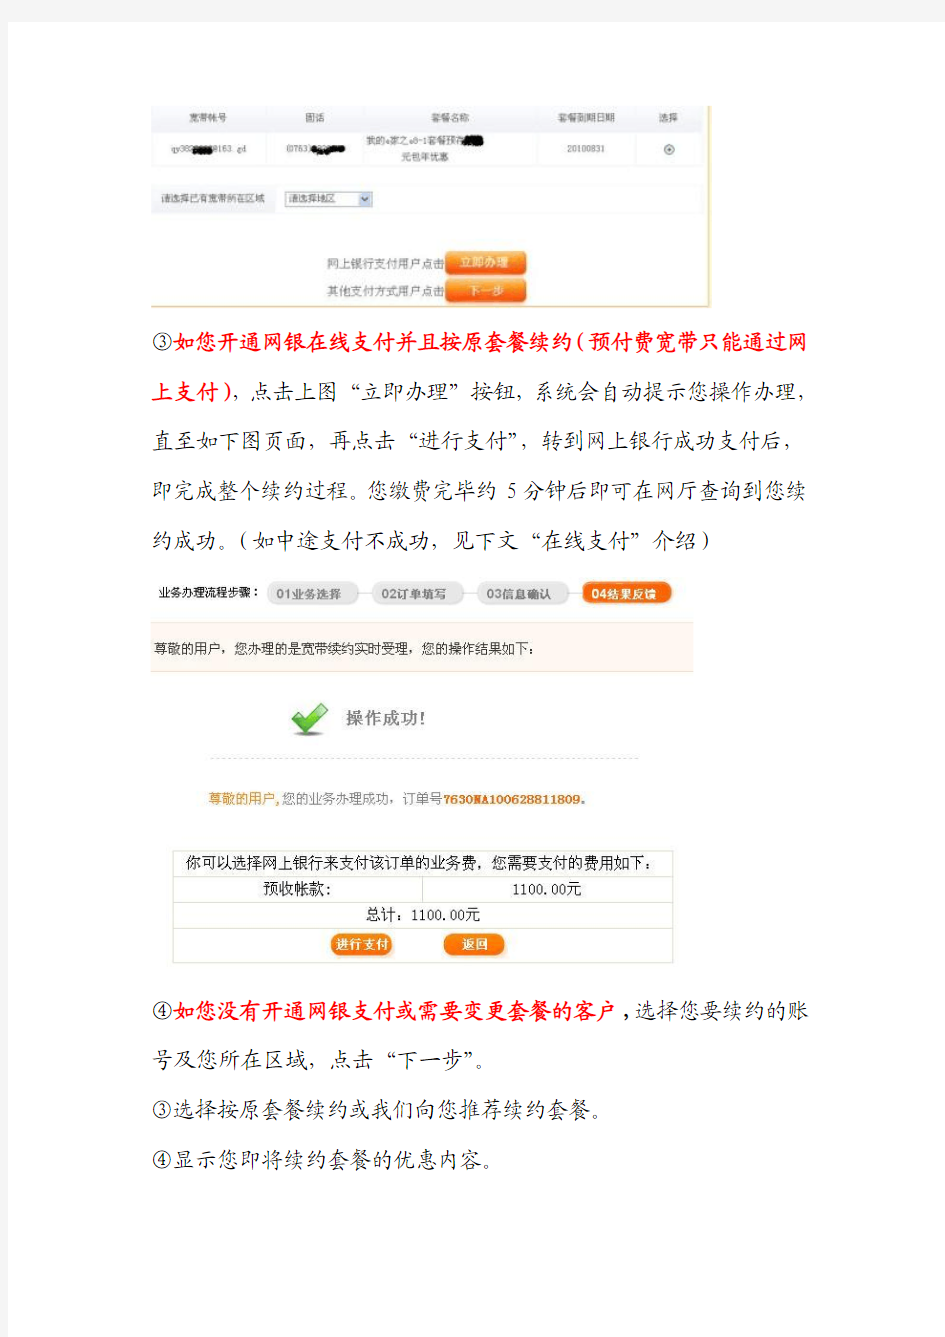 中国电信网上营业厅宽带续约办理指引